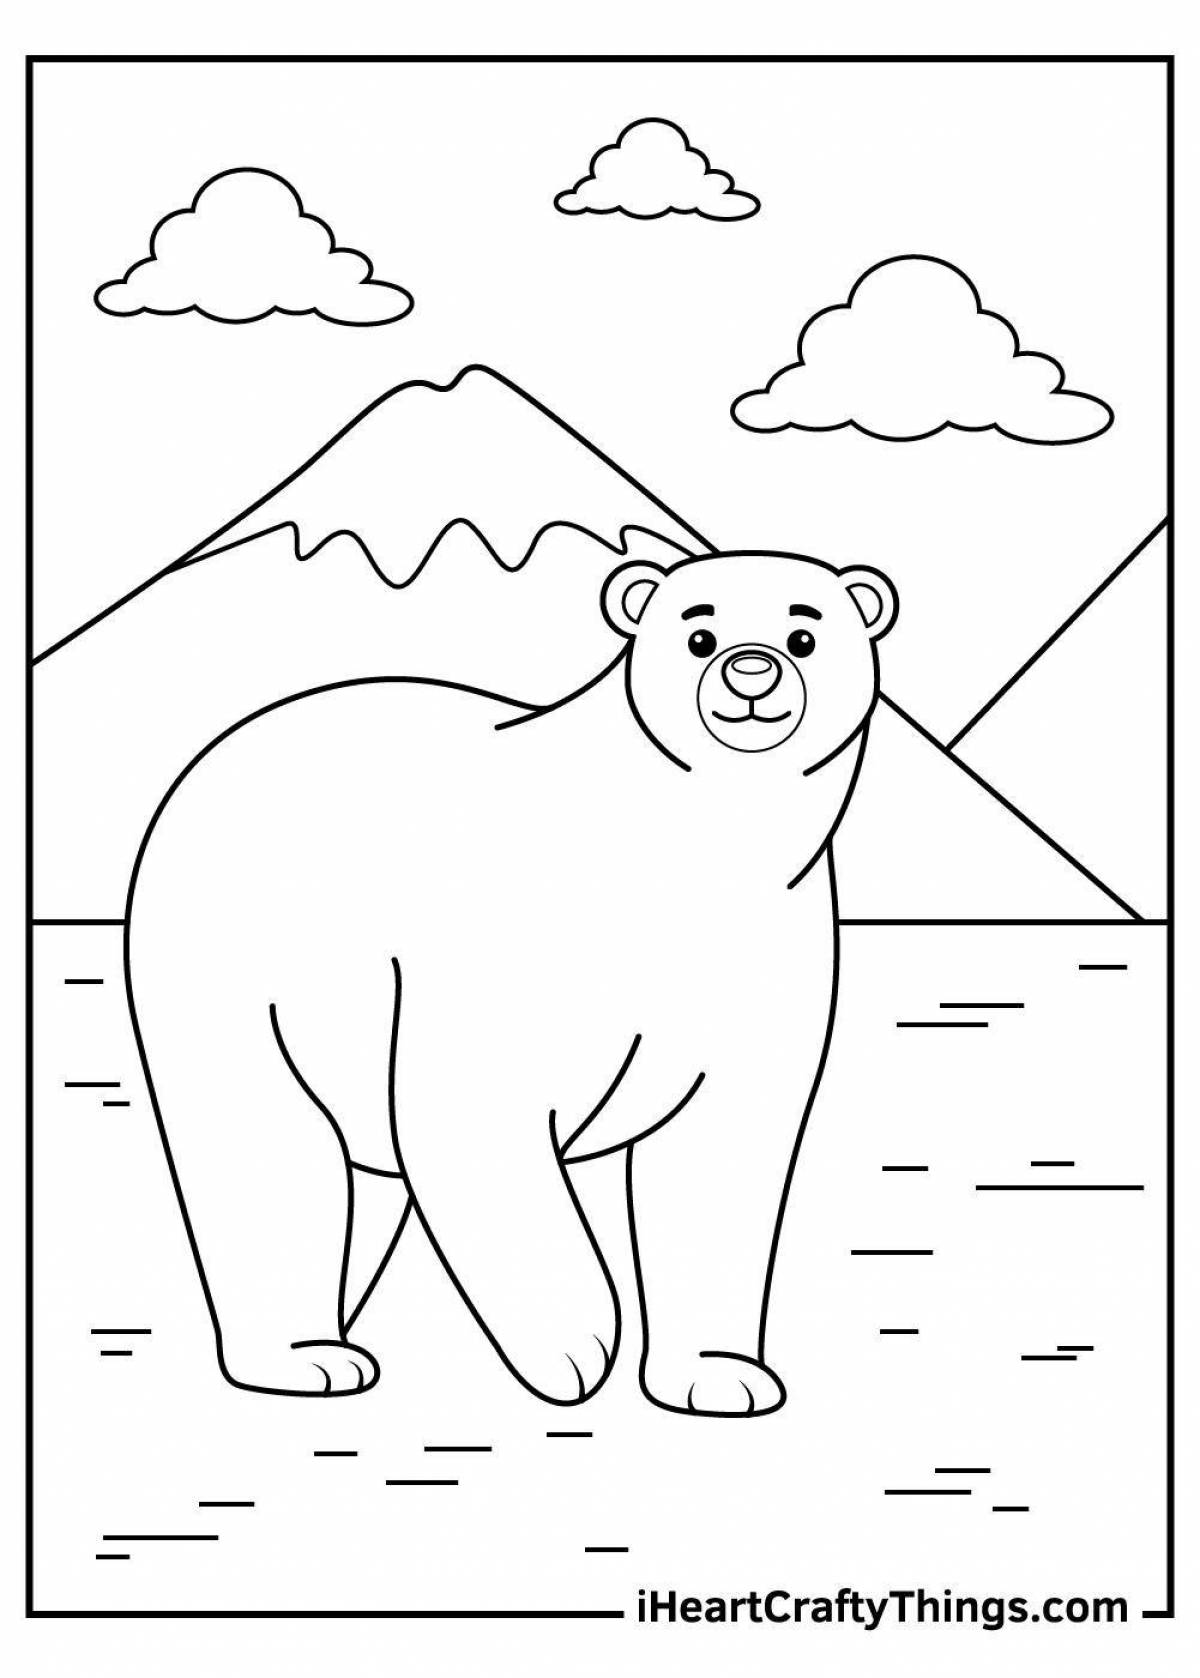 Выдающаяся раскраска белого медведя для детей 5-6 лет